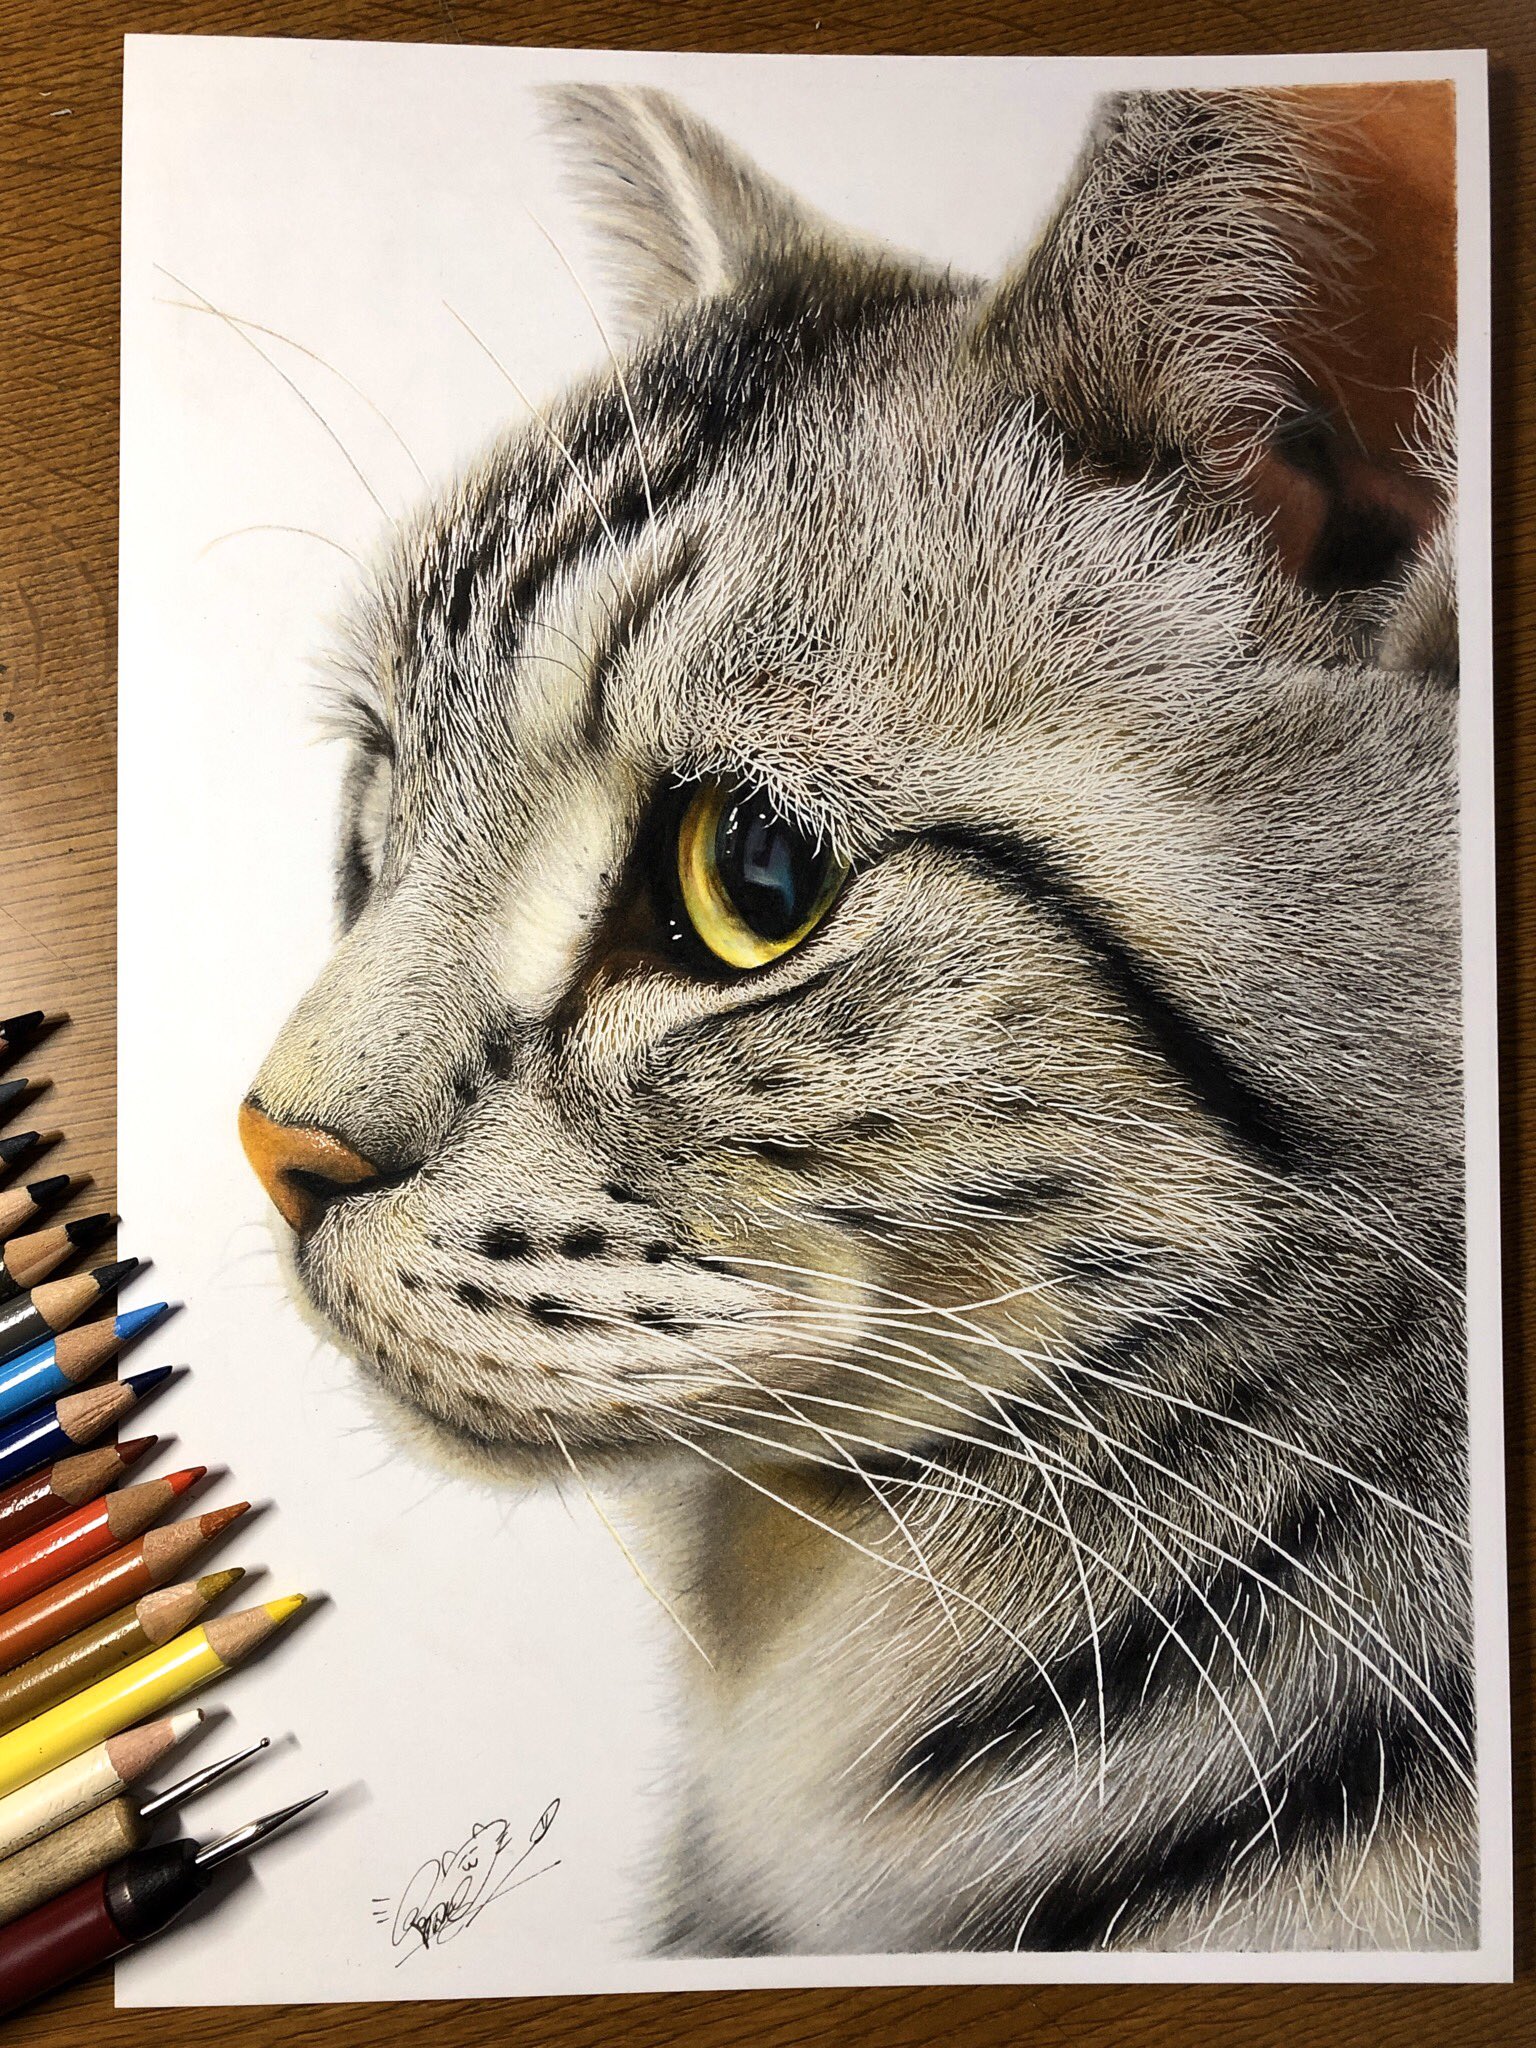 これ写真でしょw色鉛筆で描いた猫ちゃんがリアルすぎてビビったw 話題の画像プラス